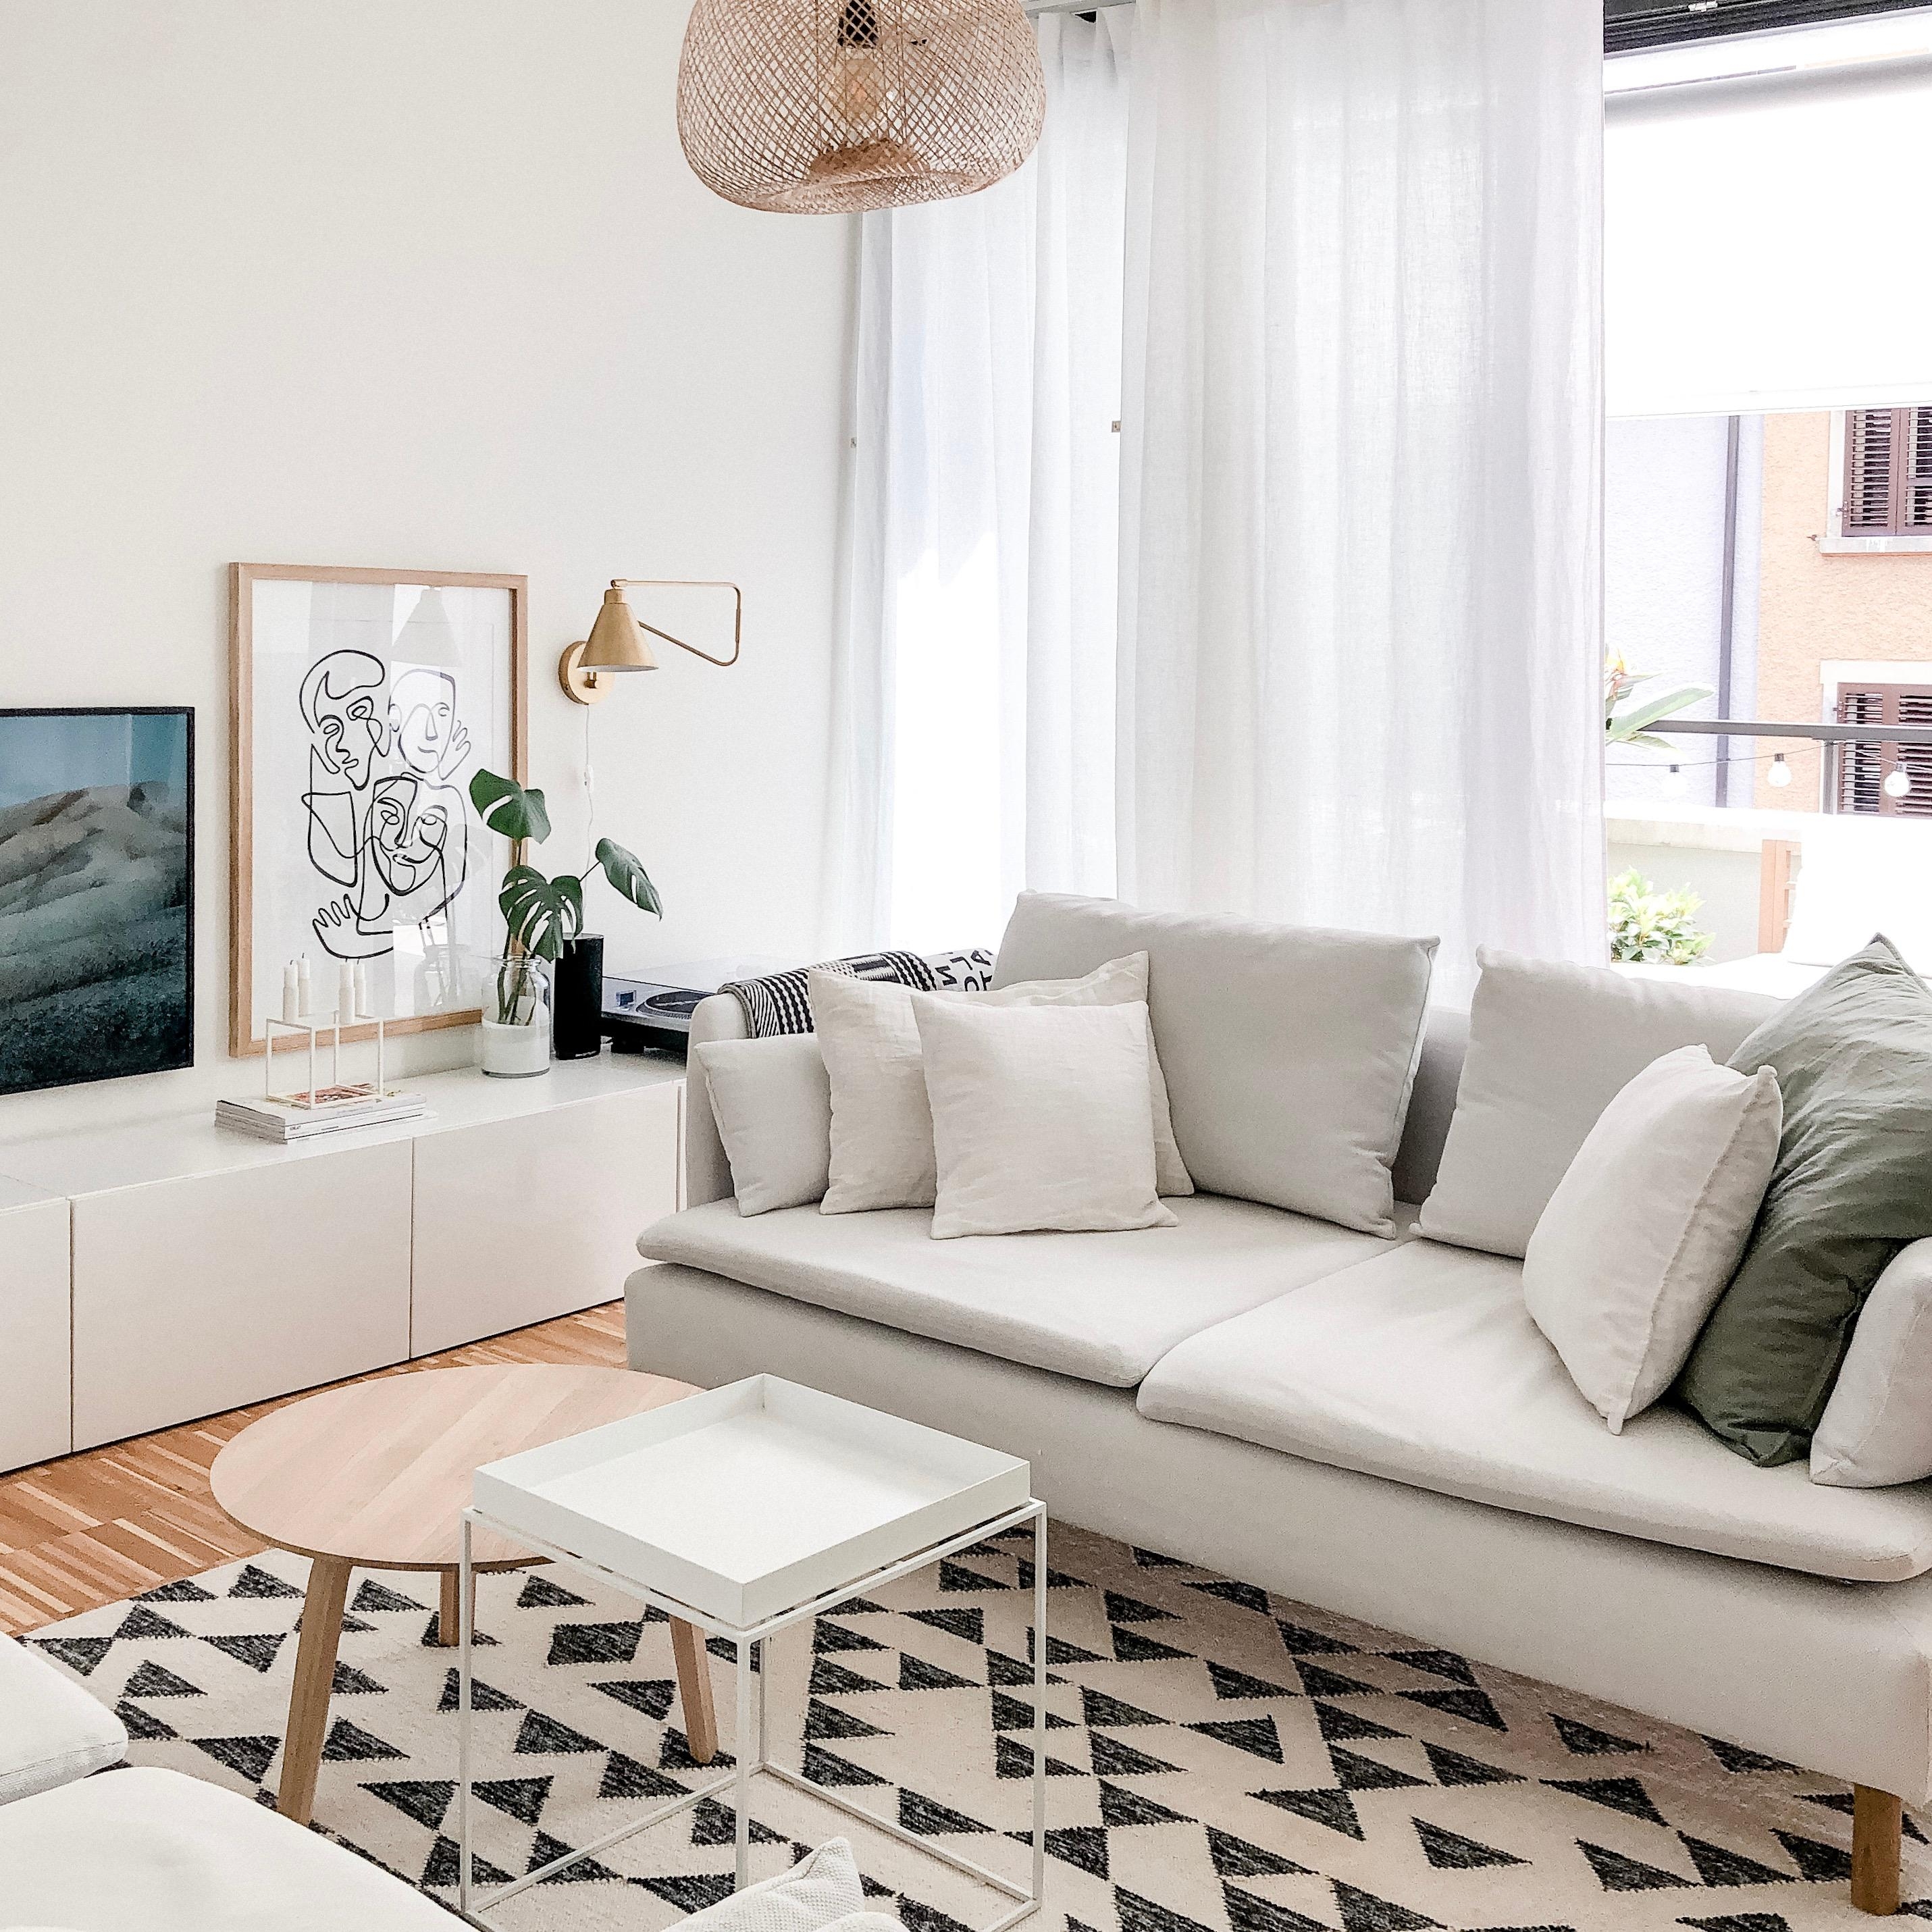 Der Couchsonntag ist vorbei, auf in eine neue Woche 🙌🏼 #wohnzimmer #couch #ikea #söderhamn